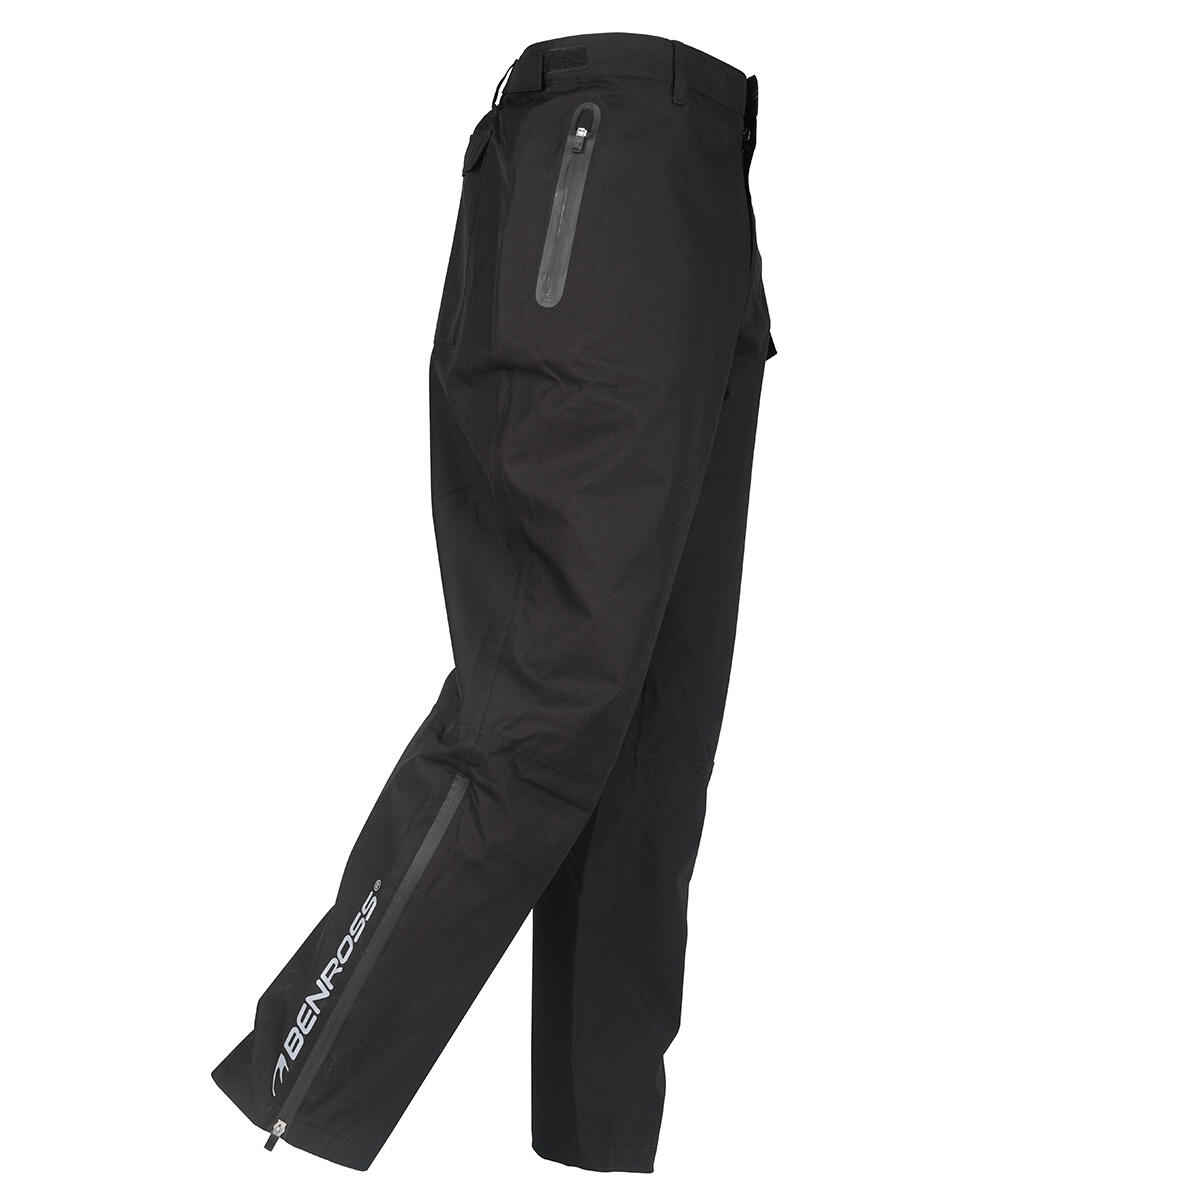 Benross Men's Hydrp Pro X Waterproof Golf Trousers 1/4